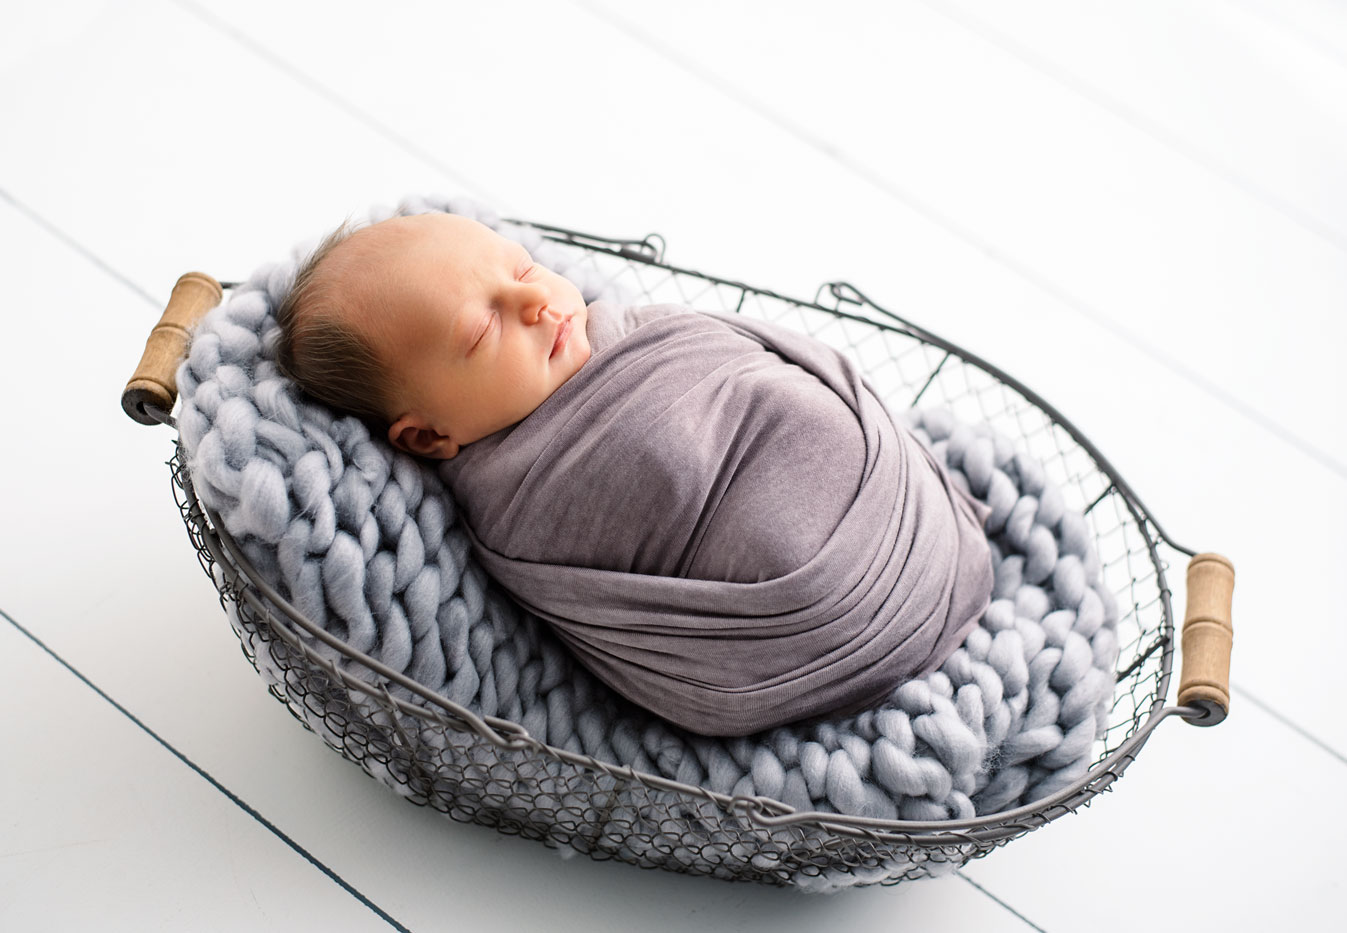 Newborn baby in basket